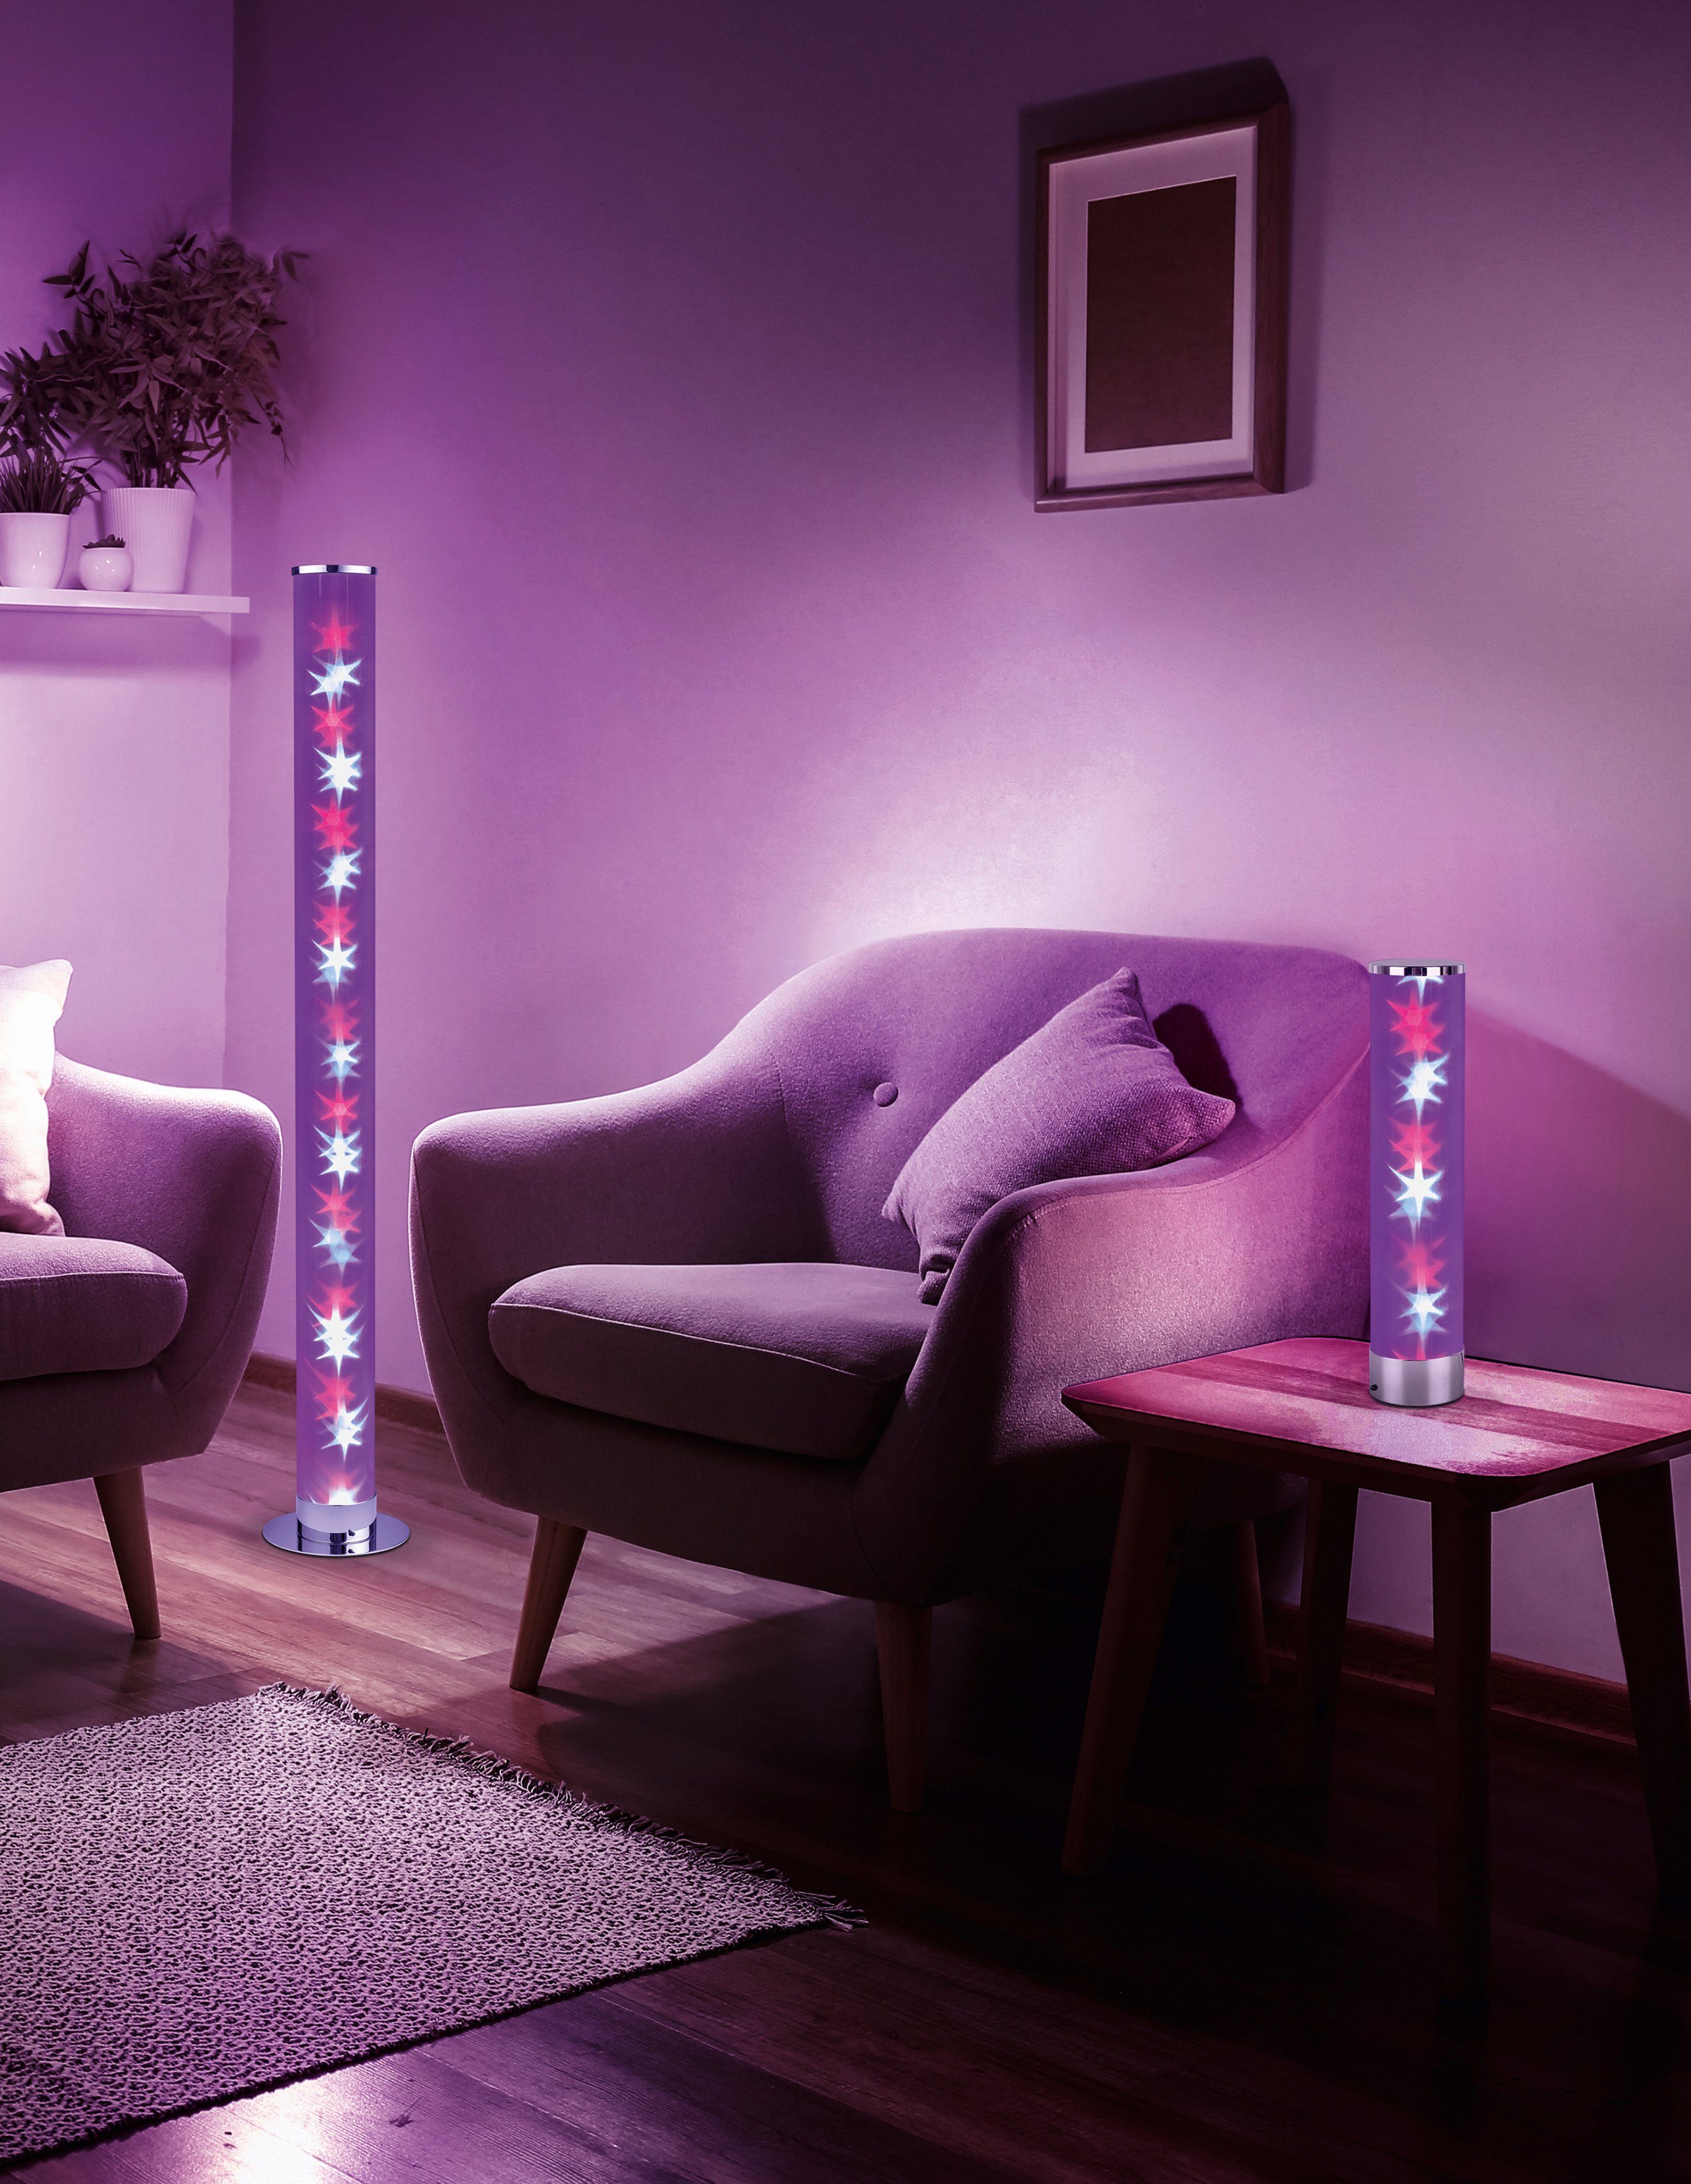 TRIO Leuchten LED fest Dimmer, Warmweiß, RICO, Tischleuchte über LED Fernbedienung Schnurschalter, integriert, RGBW-Farbwechsler, Memory Funktion